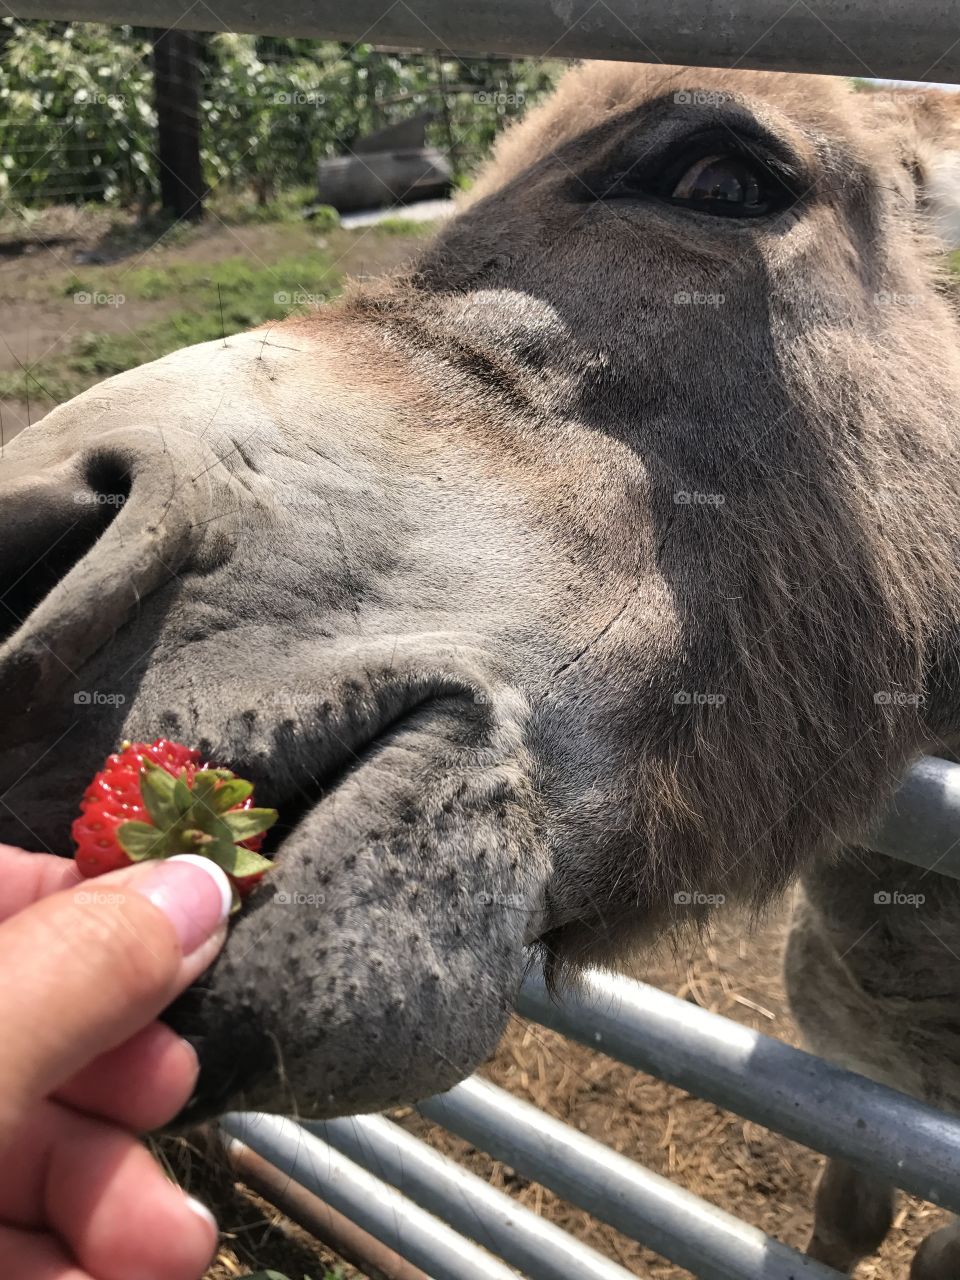 Donkey loves strawberries!